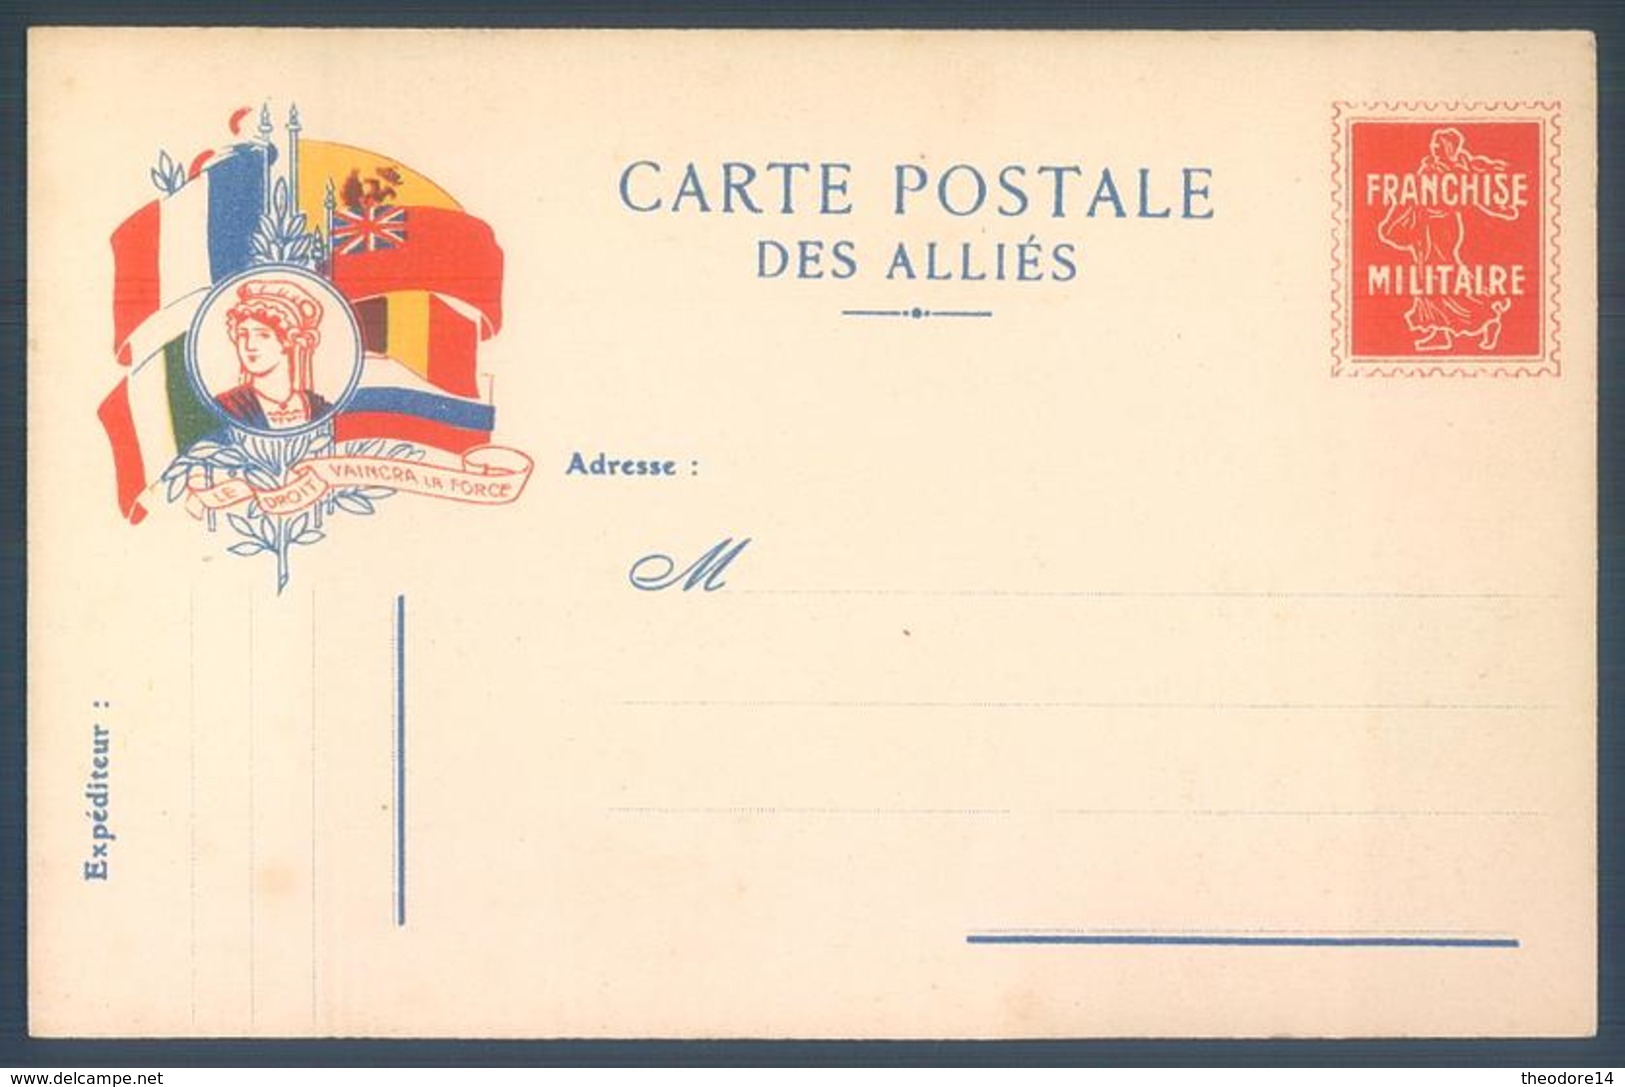 Lot de 7 cartes Carte Postale des Alliés Franchise Militaire Guerre 14/18